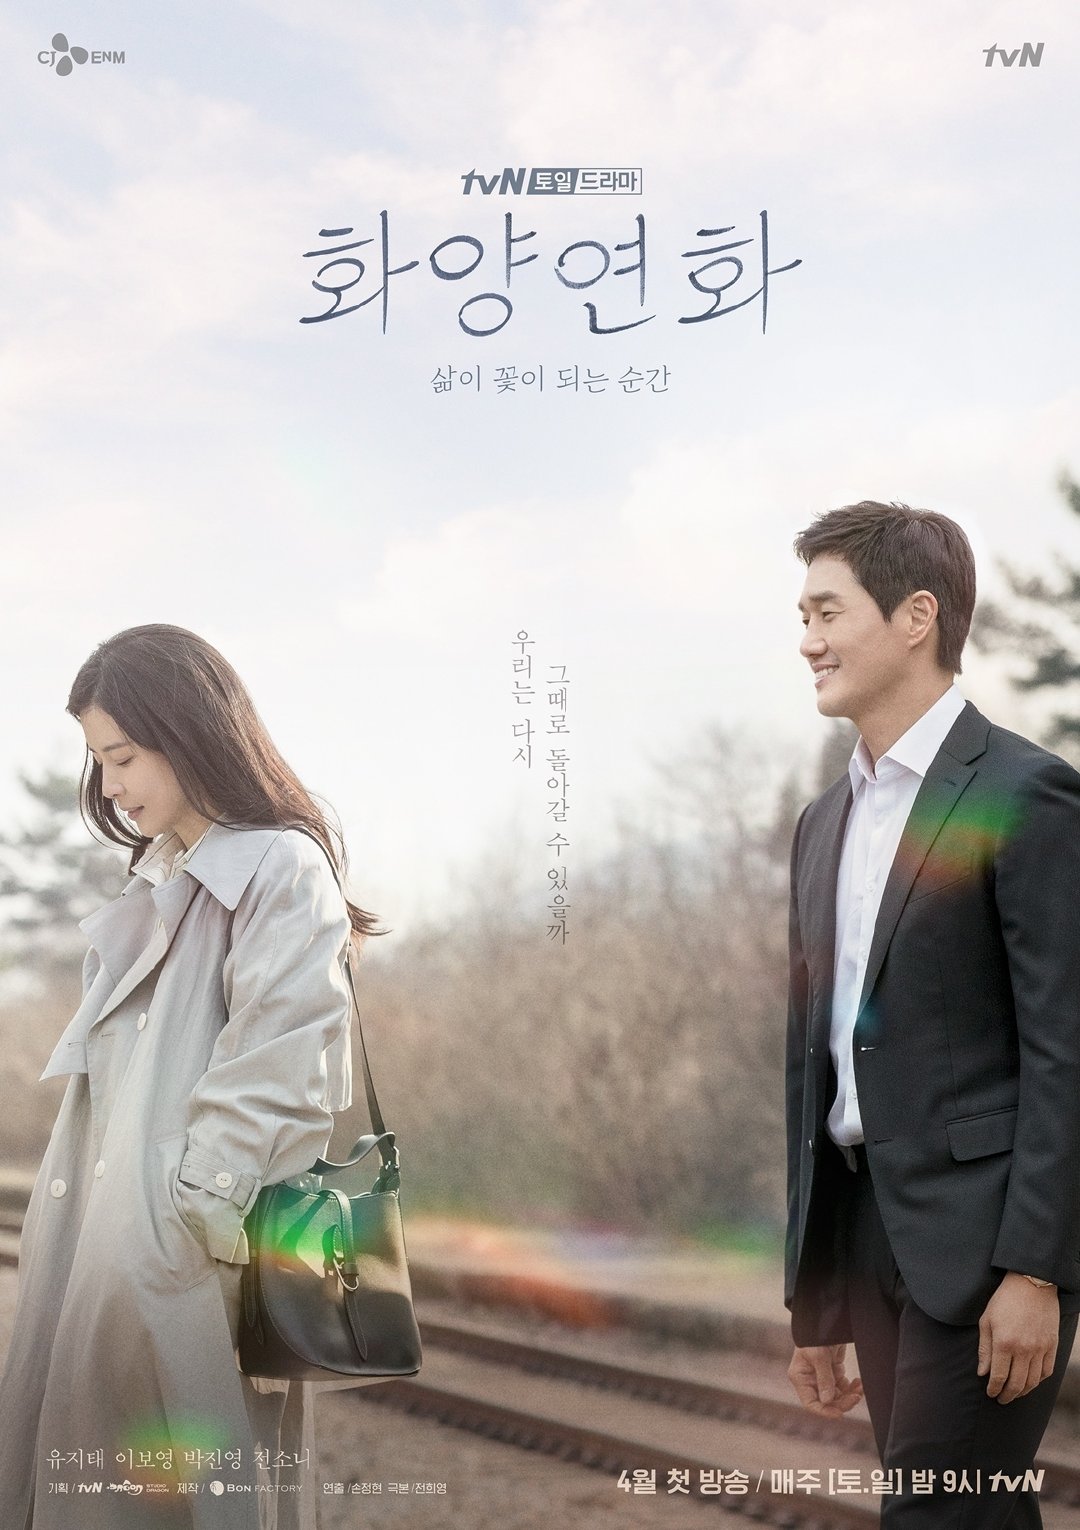 中年爱情故事为什么能赢得9分？“像花一样出生，像夏天的花一样”是以“迟来的韩国电视剧”的风格治愈人心。